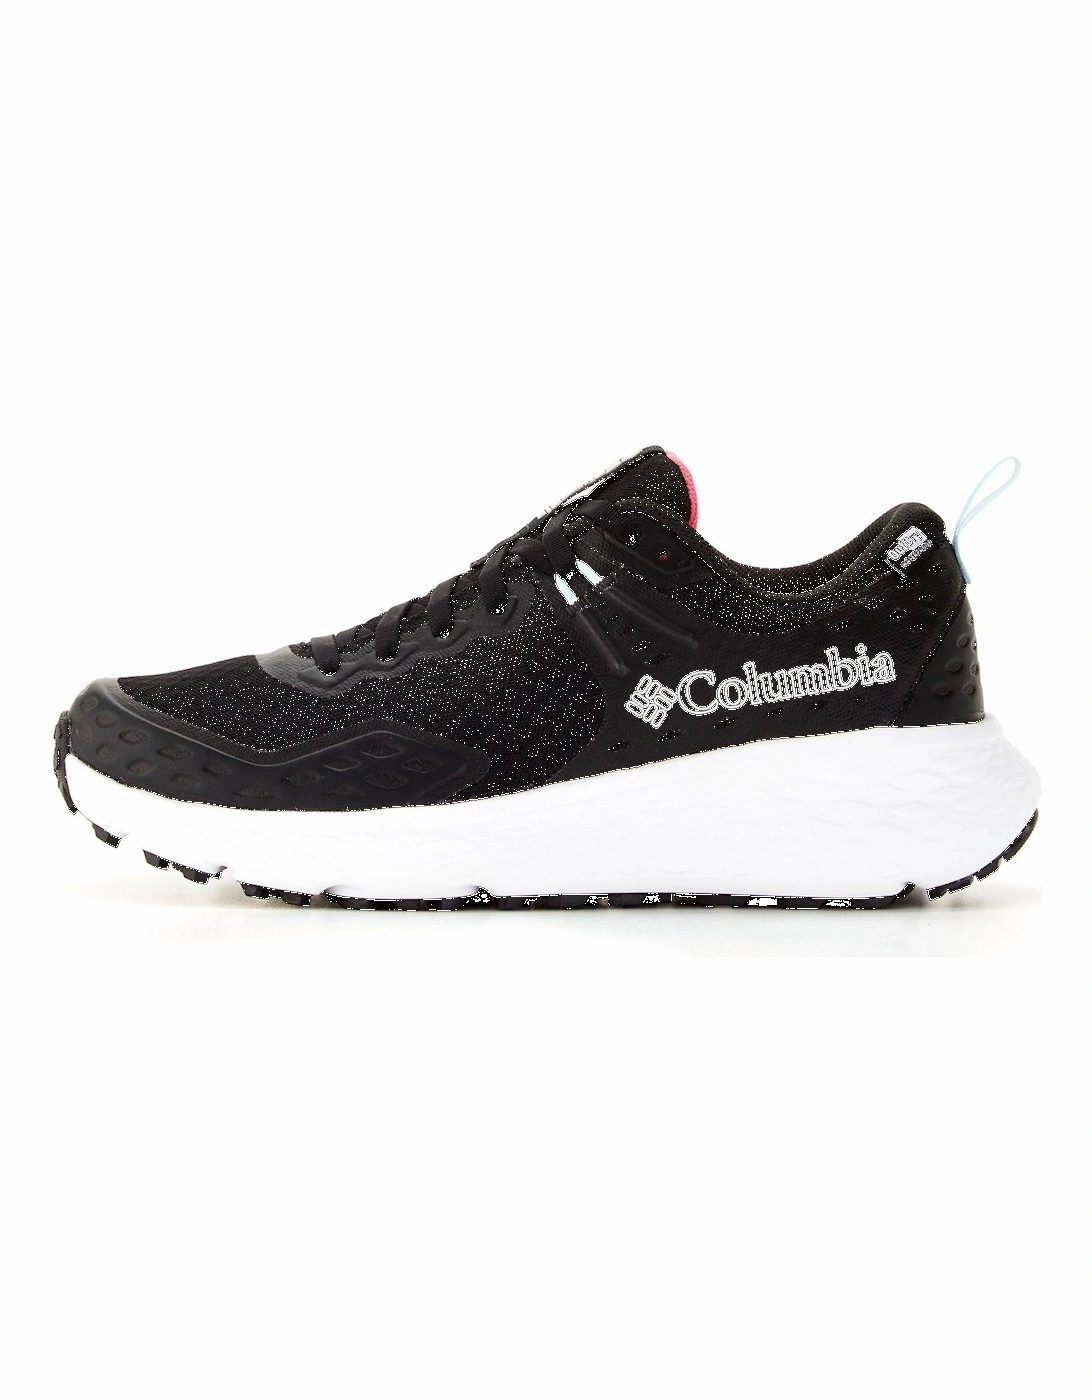 Womens Konos Outdry Waterproof Trail Shoes - Black/multi, 7 of 6